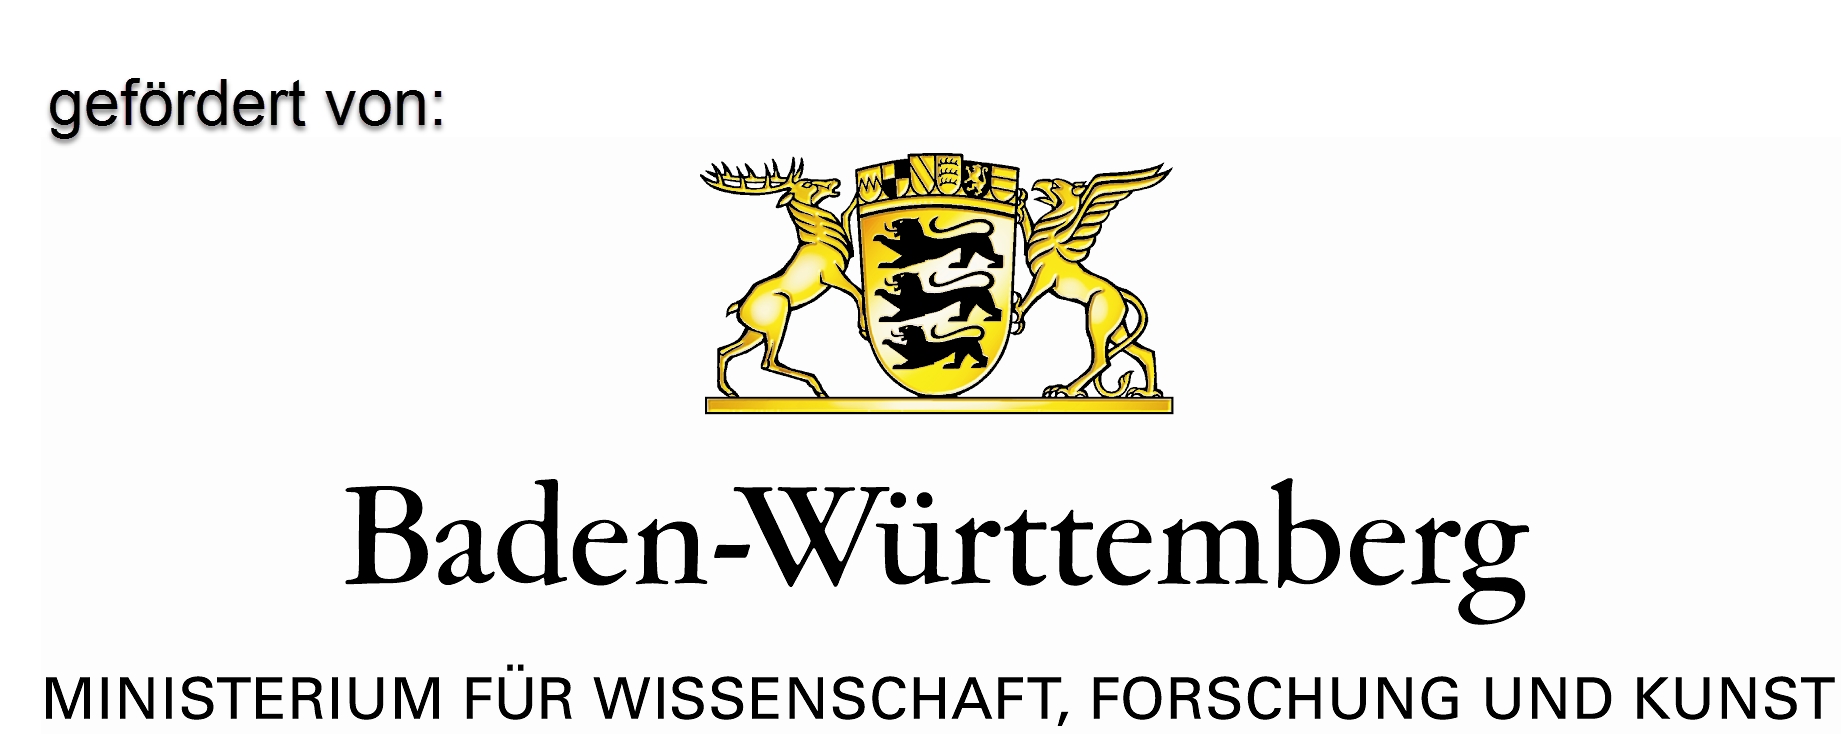 Gefördert durch das Ministerium für Wissenschaft, Forschung und Kunst Baden-Württemberg